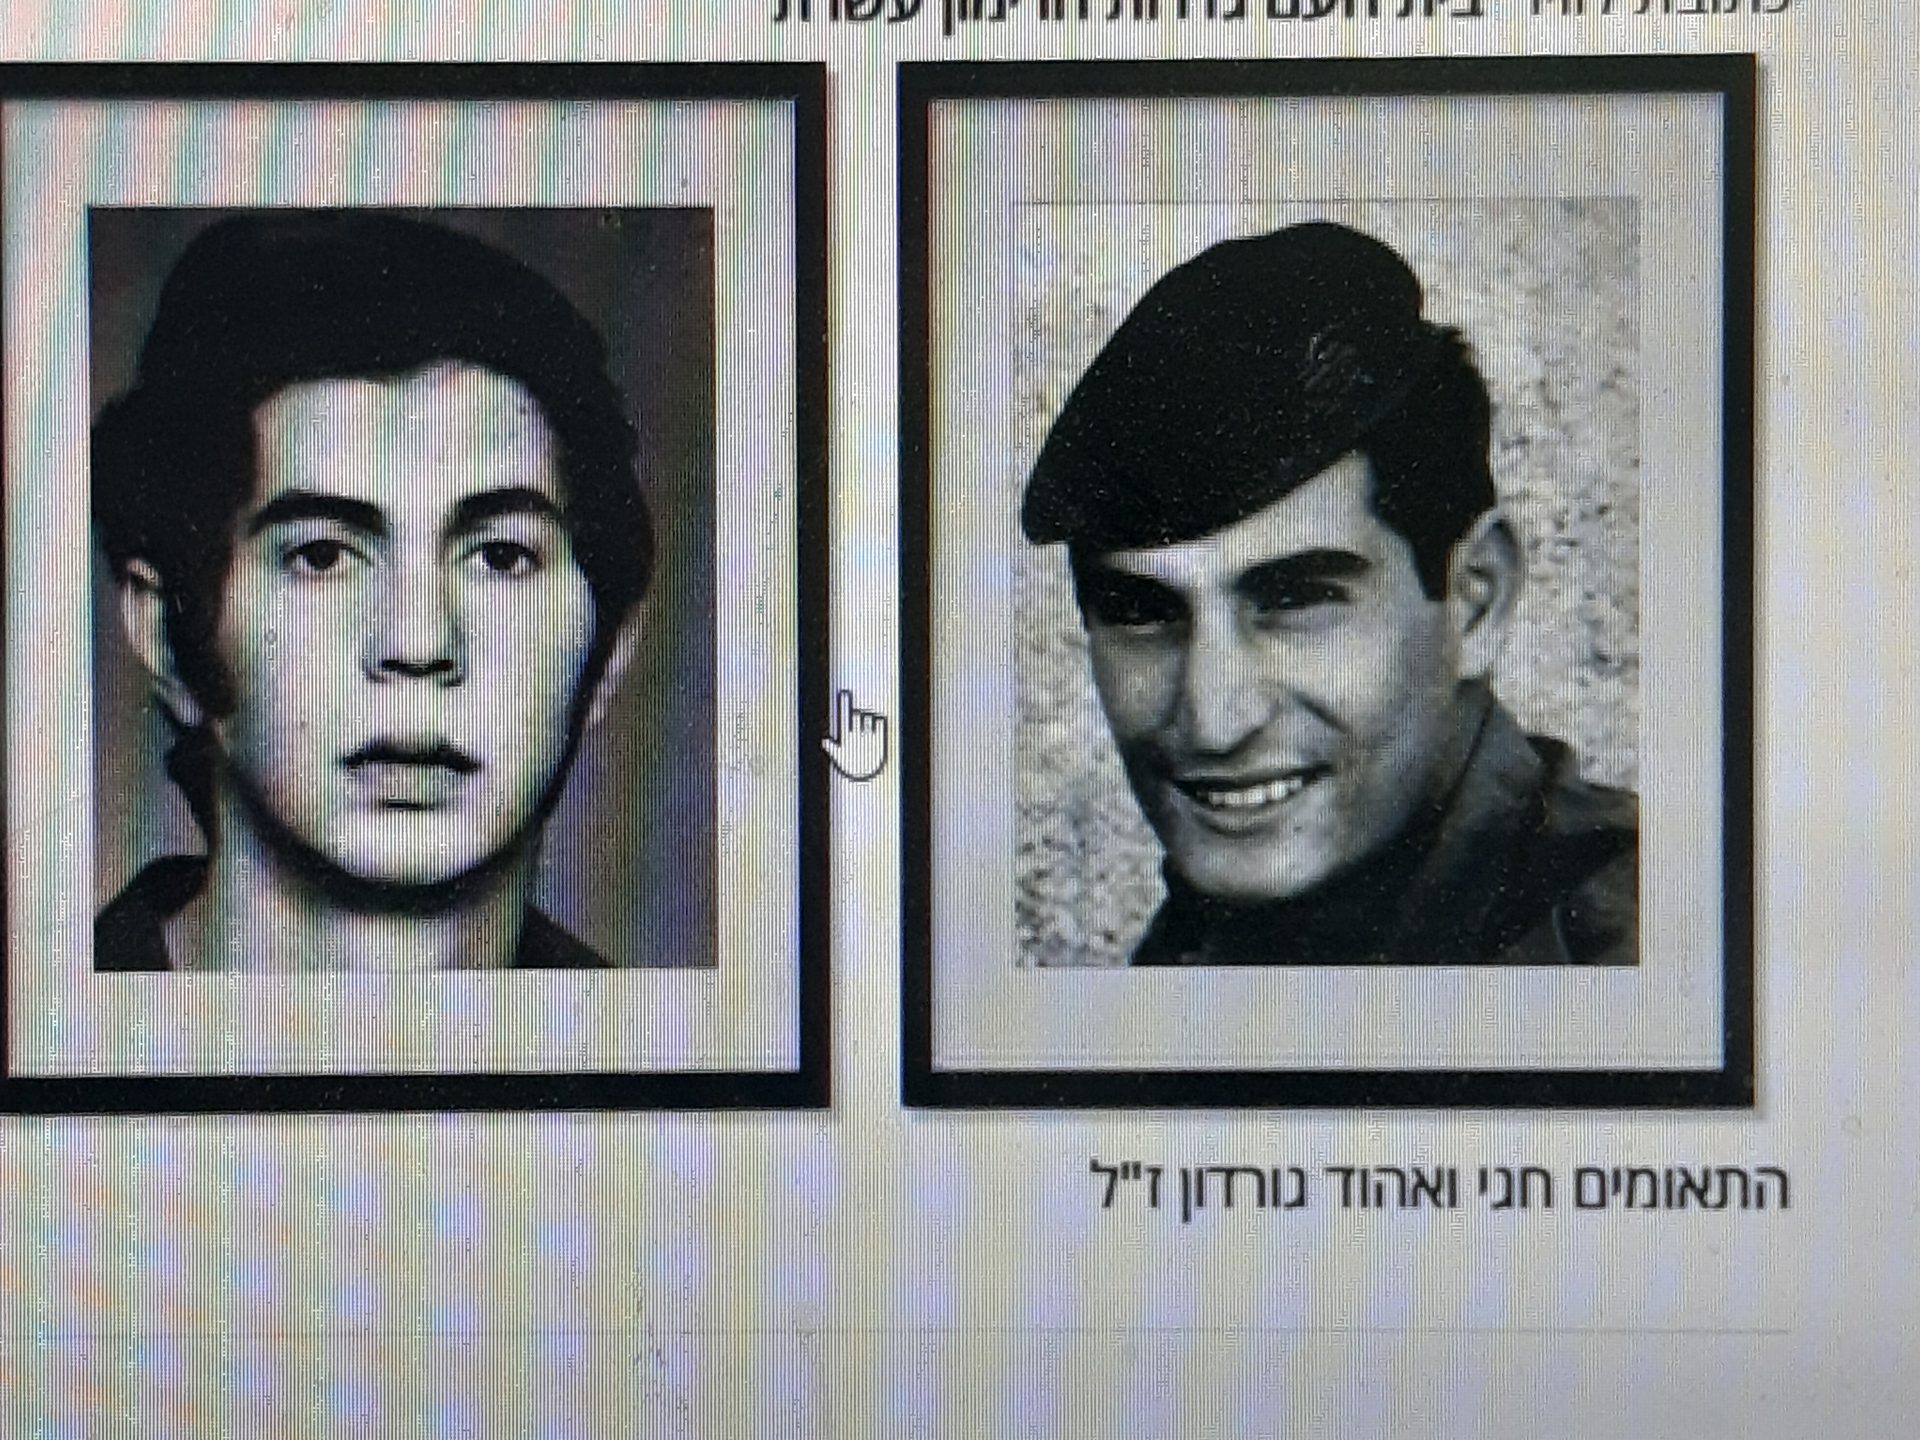 התאומים אהוד וחגי גורדון מכפר מרדכי שנפלו בשנת 1973